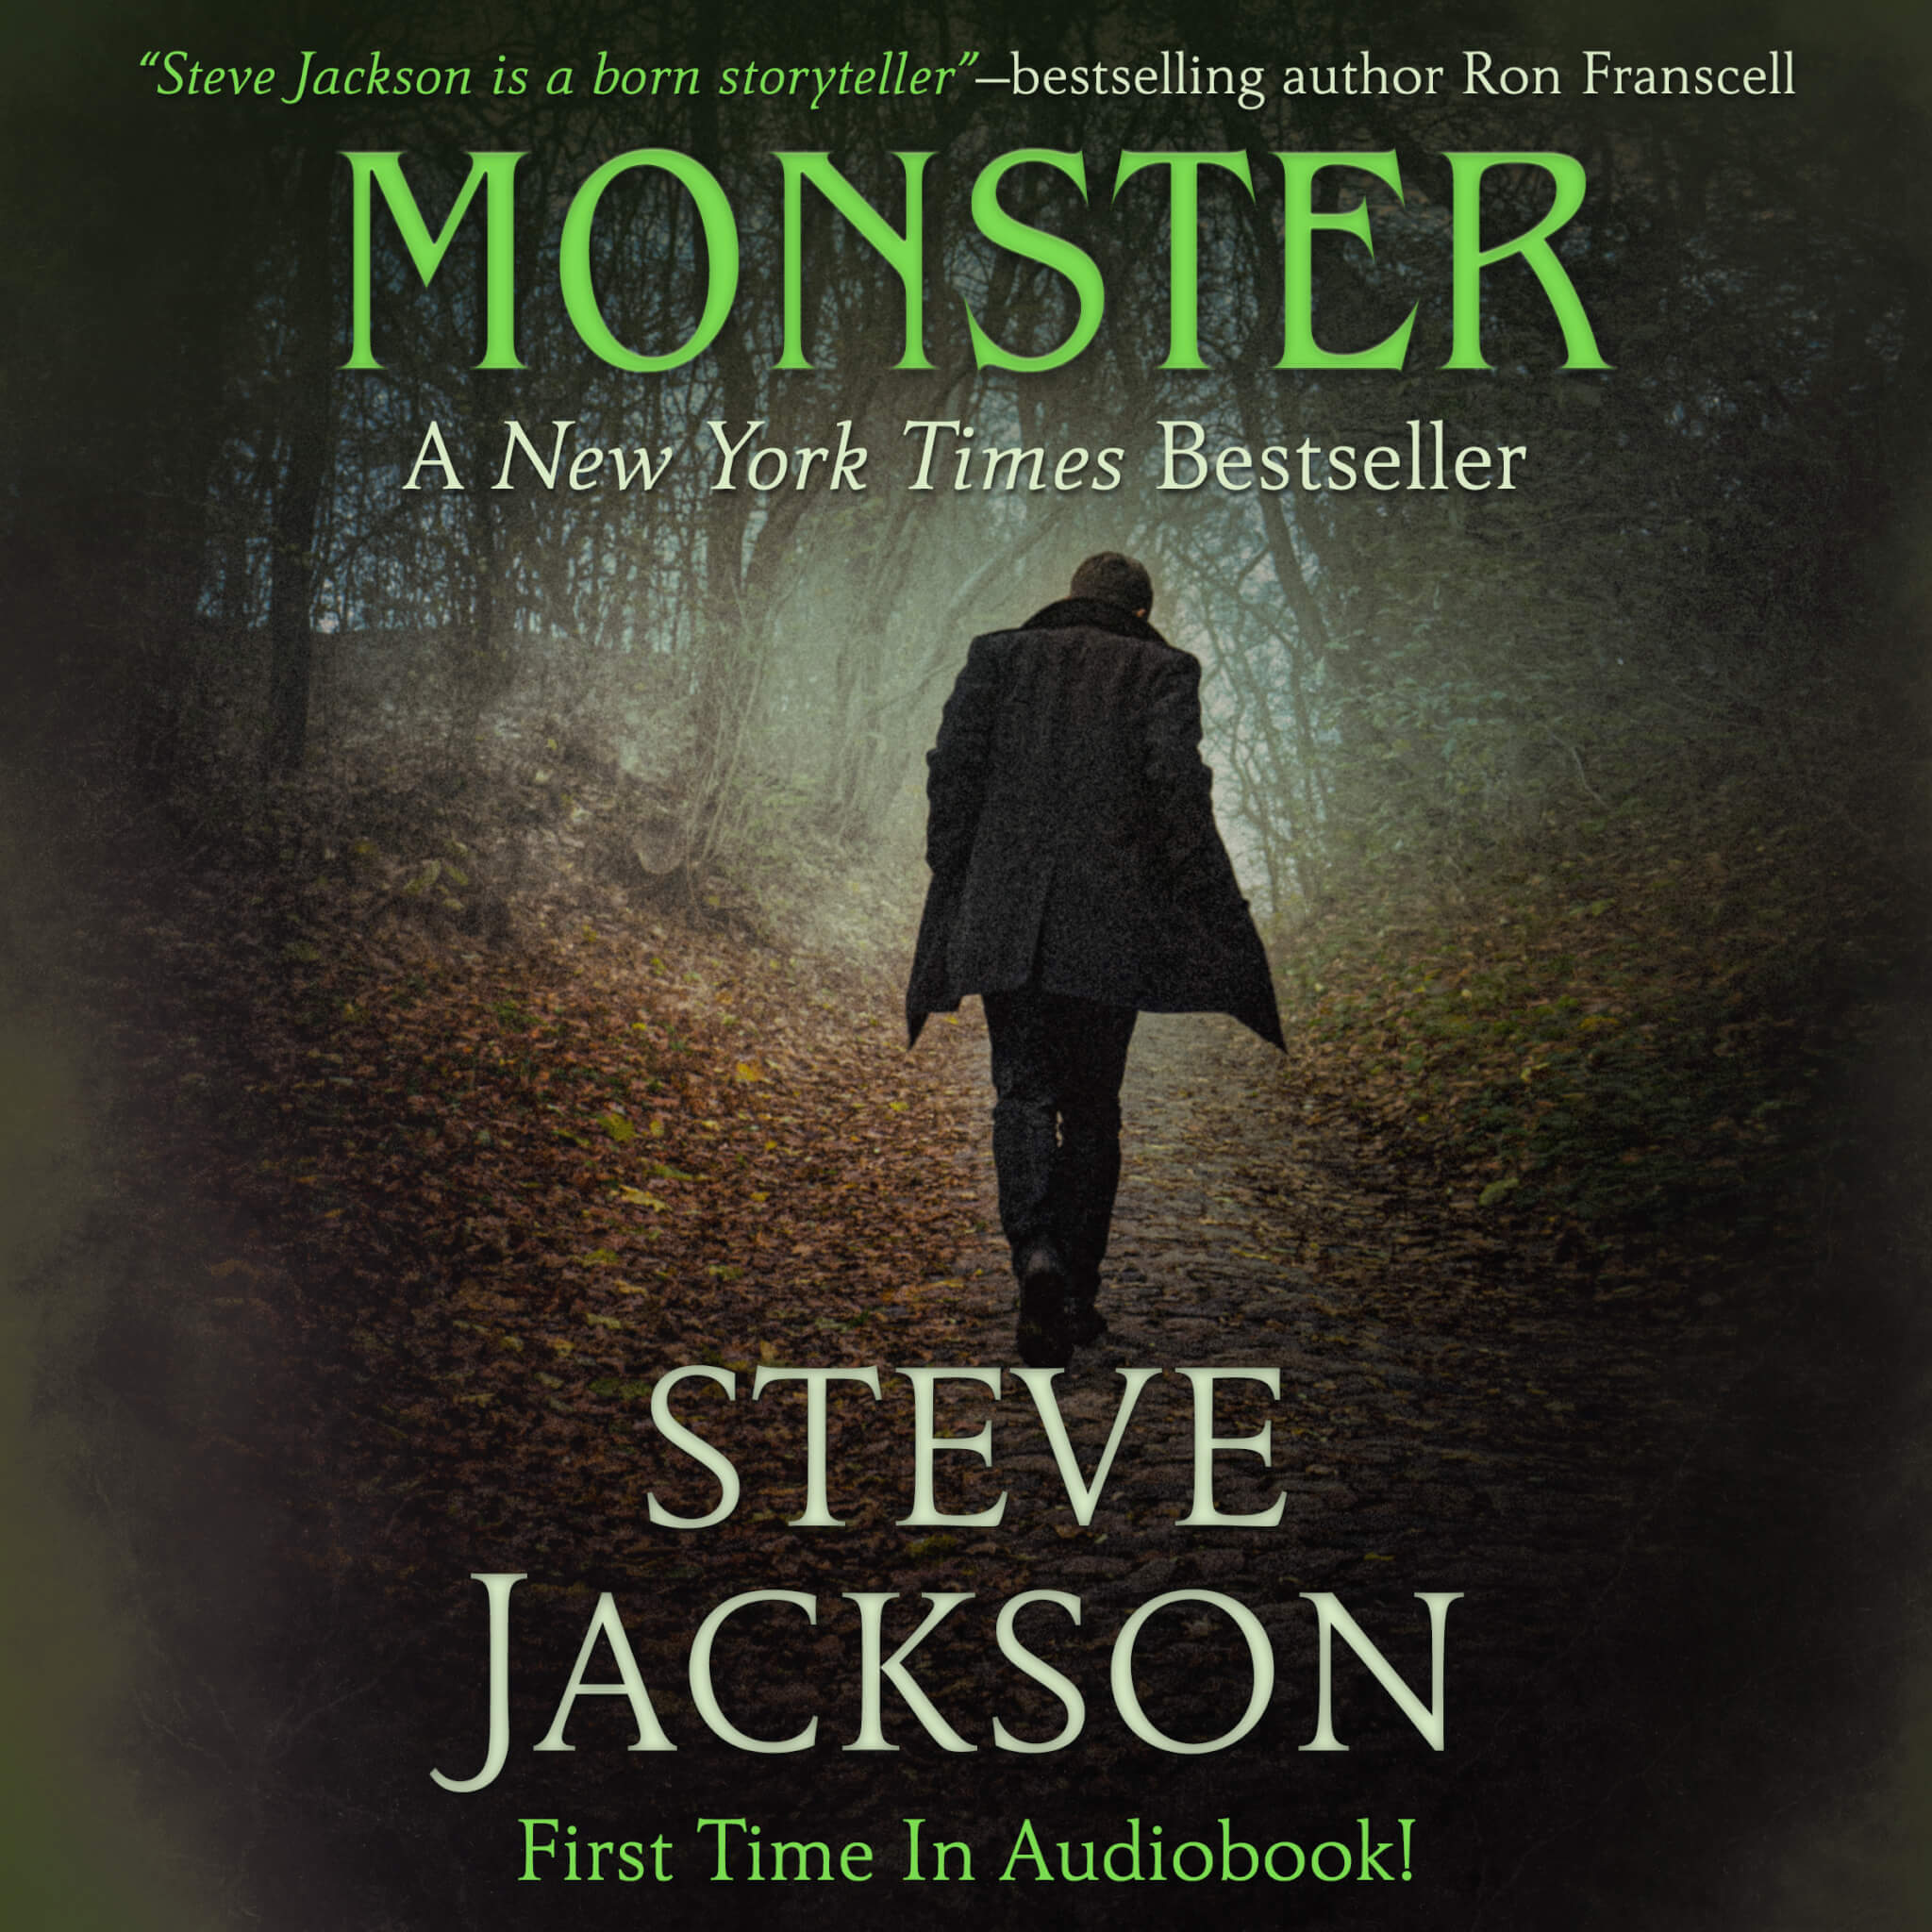 Steve Jackson MONSTER ACX Cover